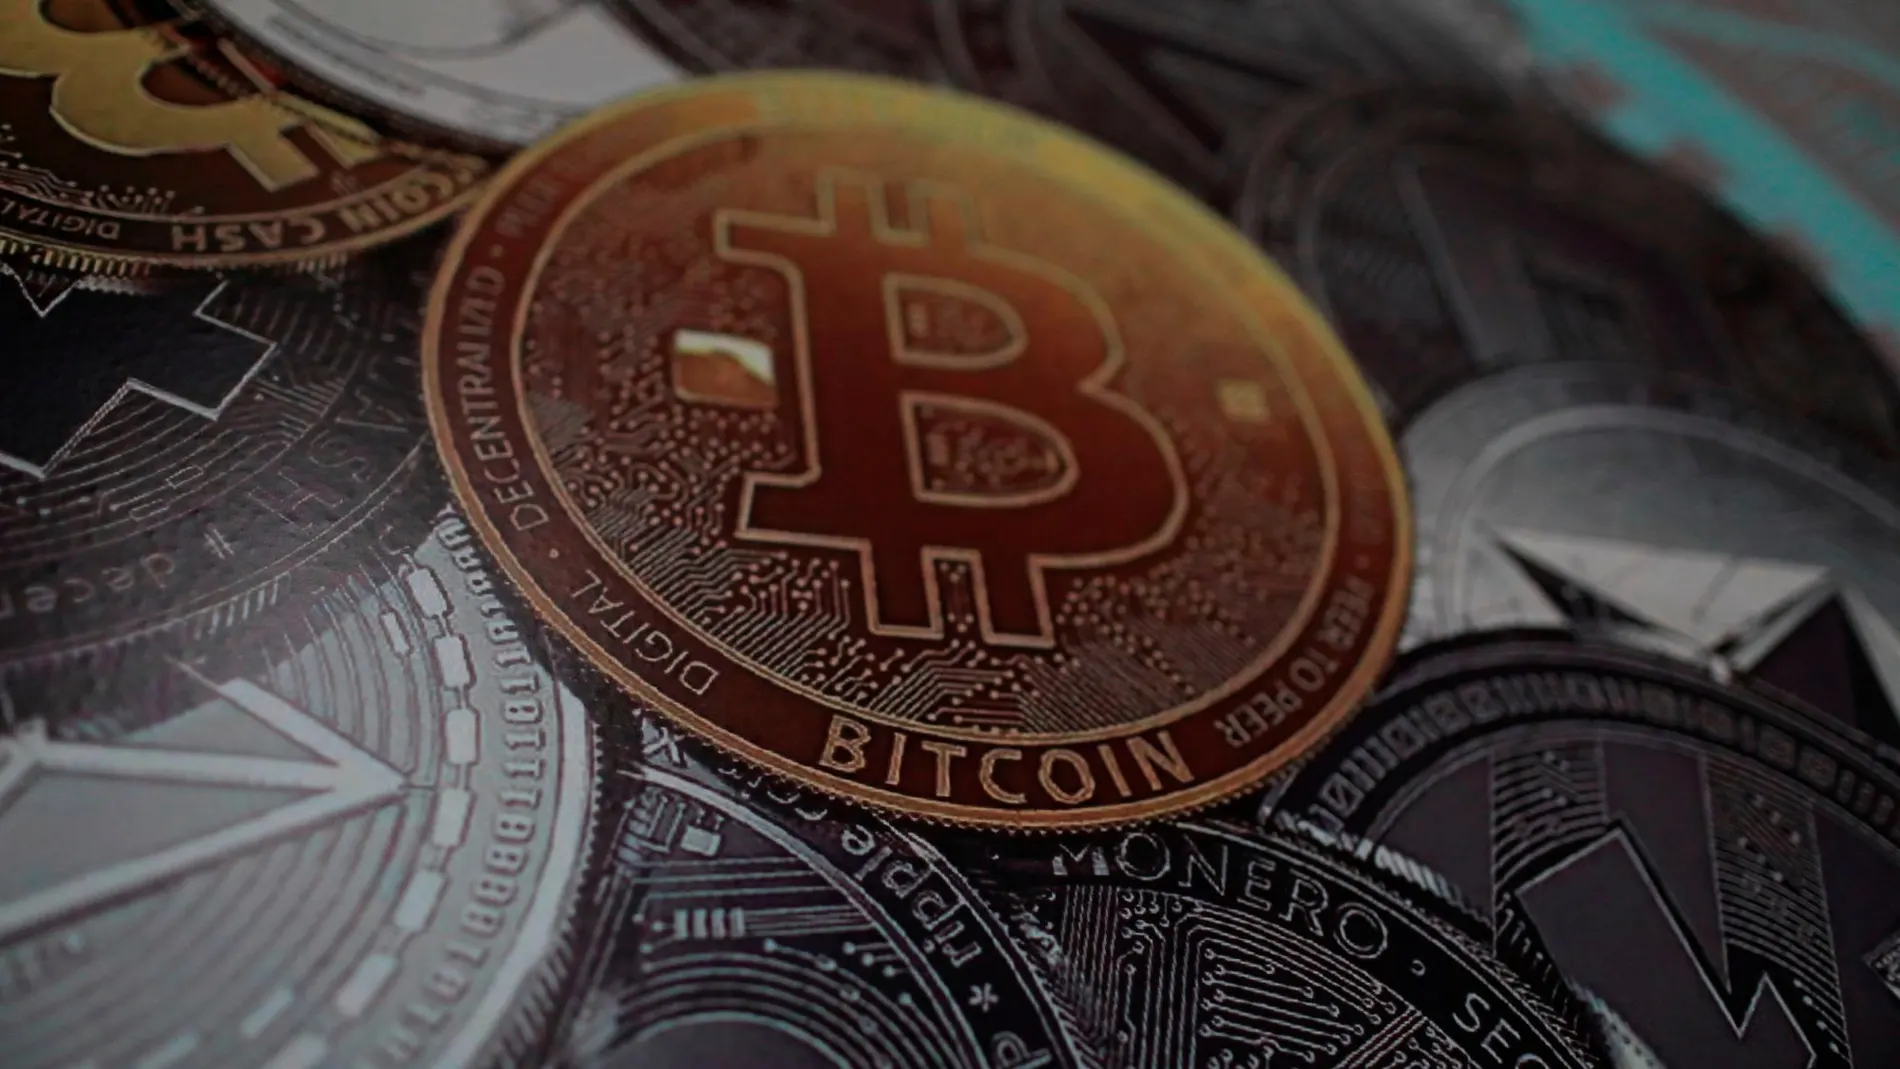 Roban 40 millones de euros en bitcoins debido a un fallo de seguridad